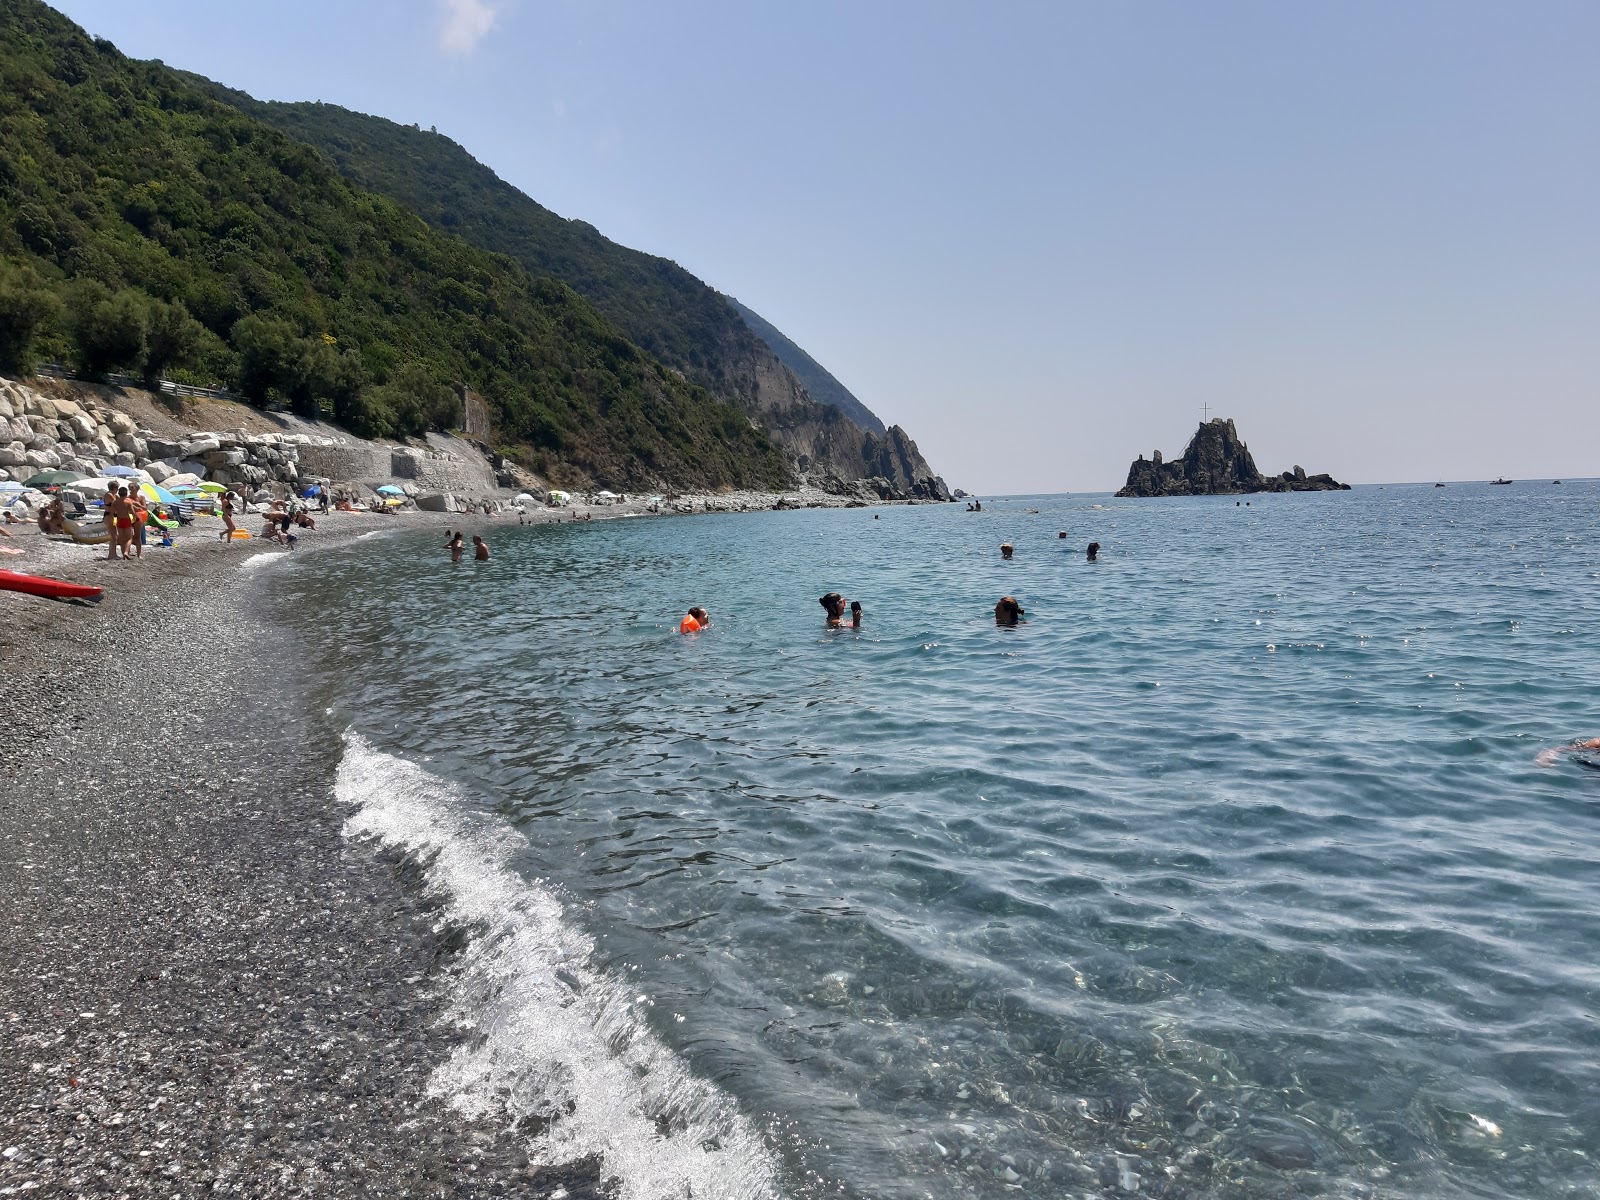 Spiaggia Riva Trigoso的照片 背靠悬崖